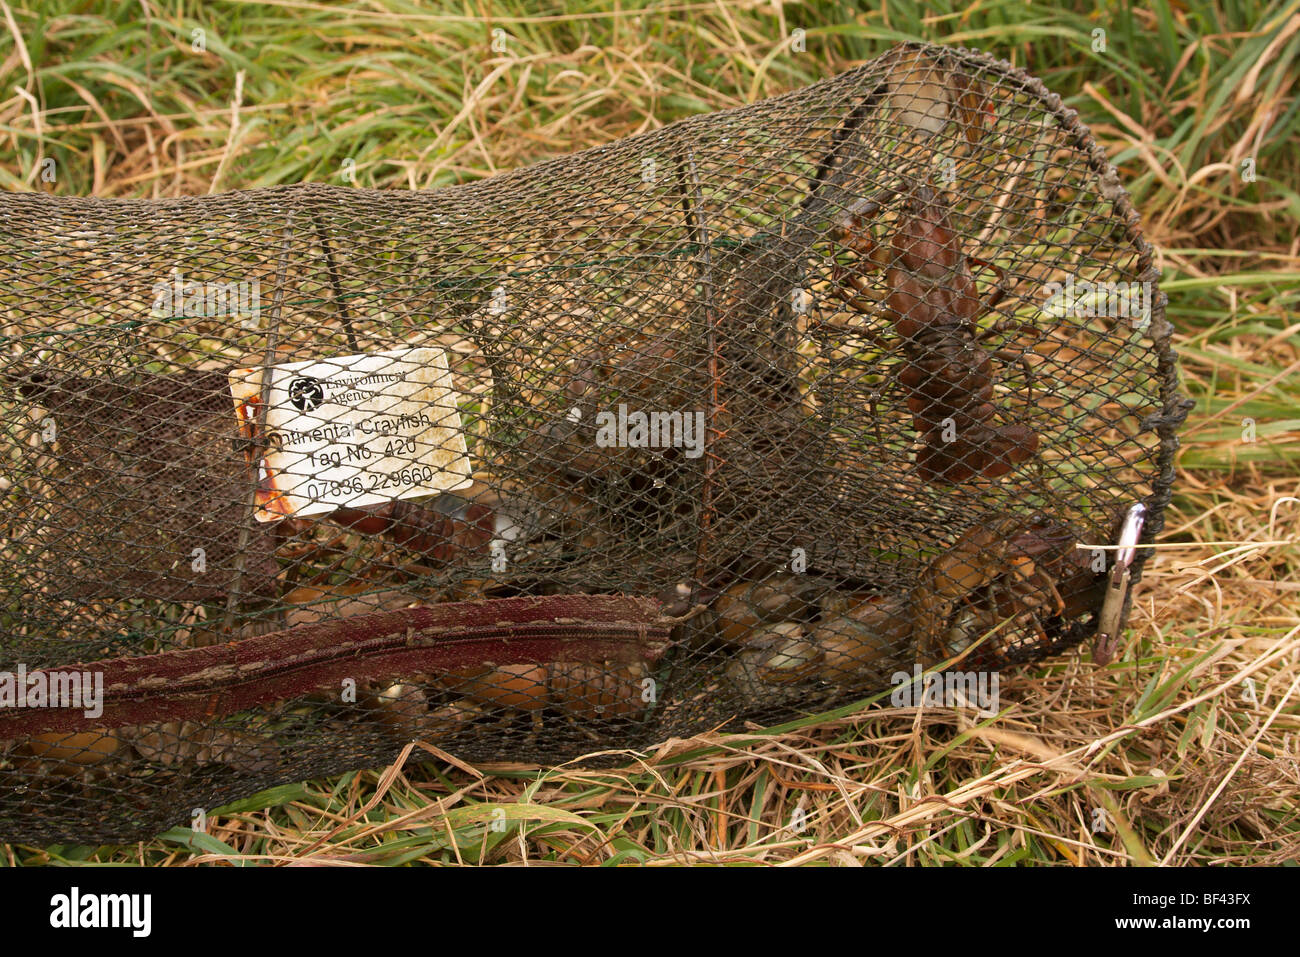 Crayfish trap immagini e fotografie stock ad alta risoluzione - Alamy